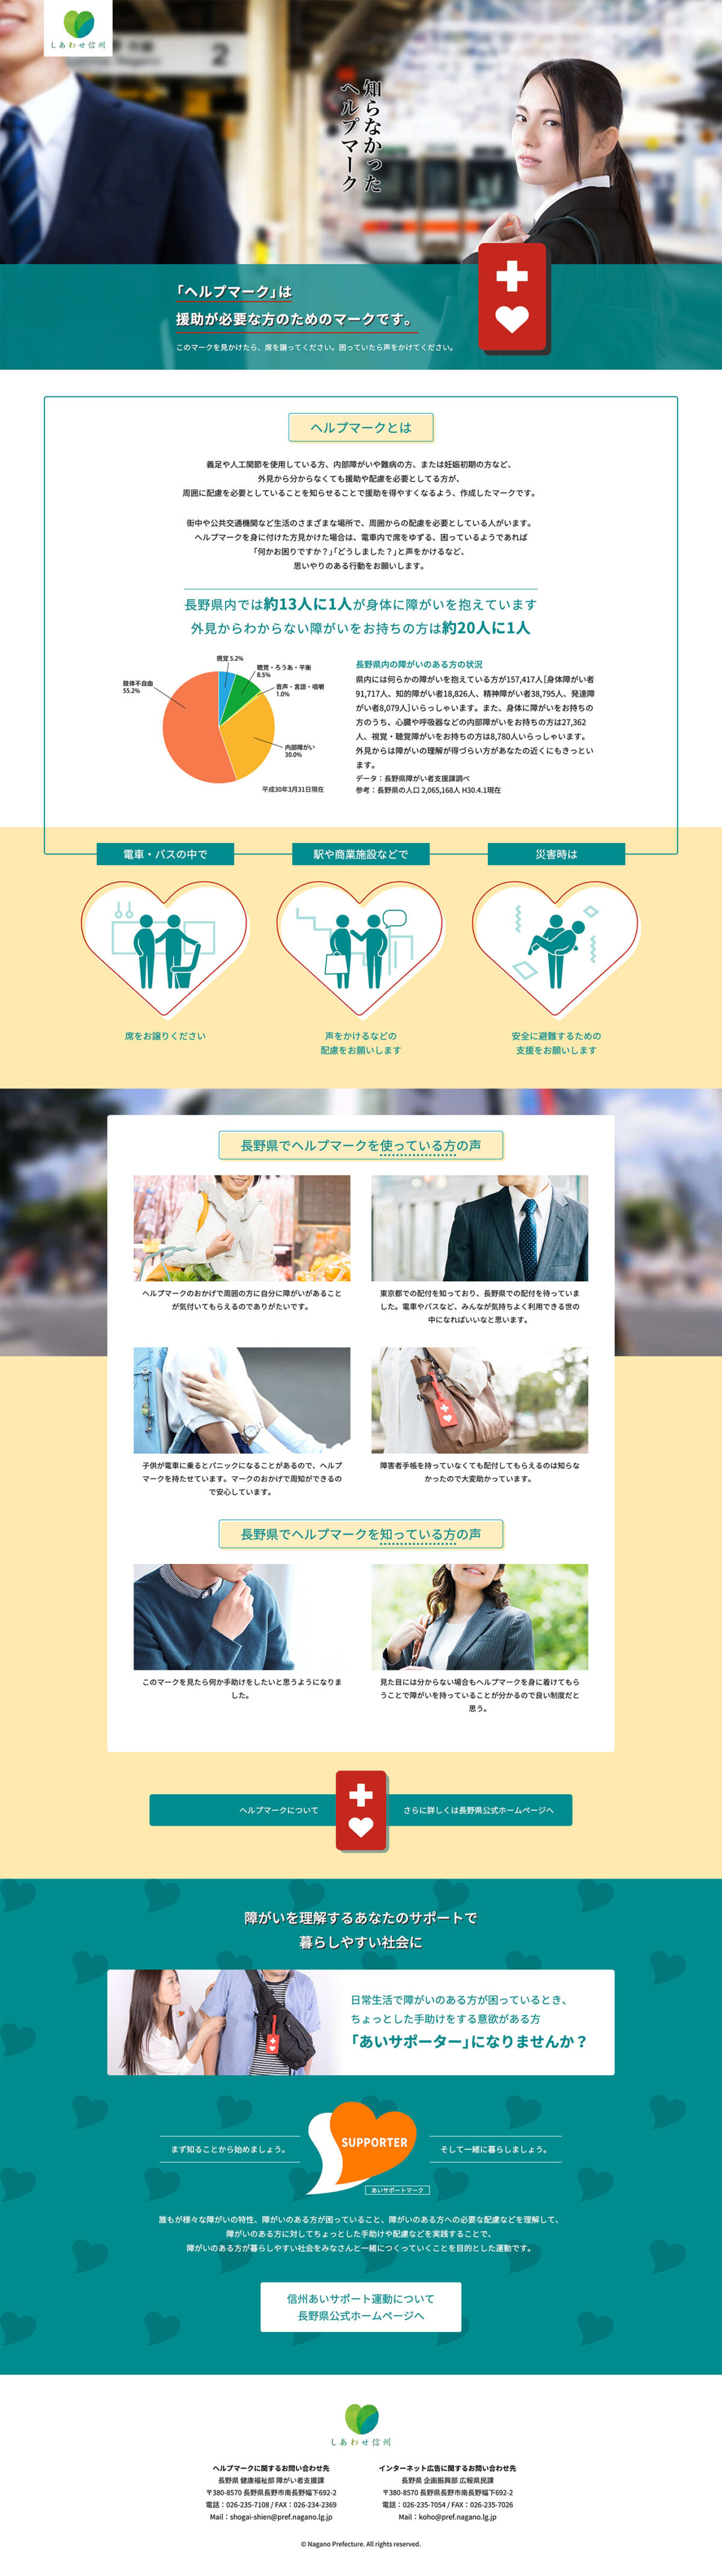 長野県「障がい者に対する県民の理解促進」キャンペーン